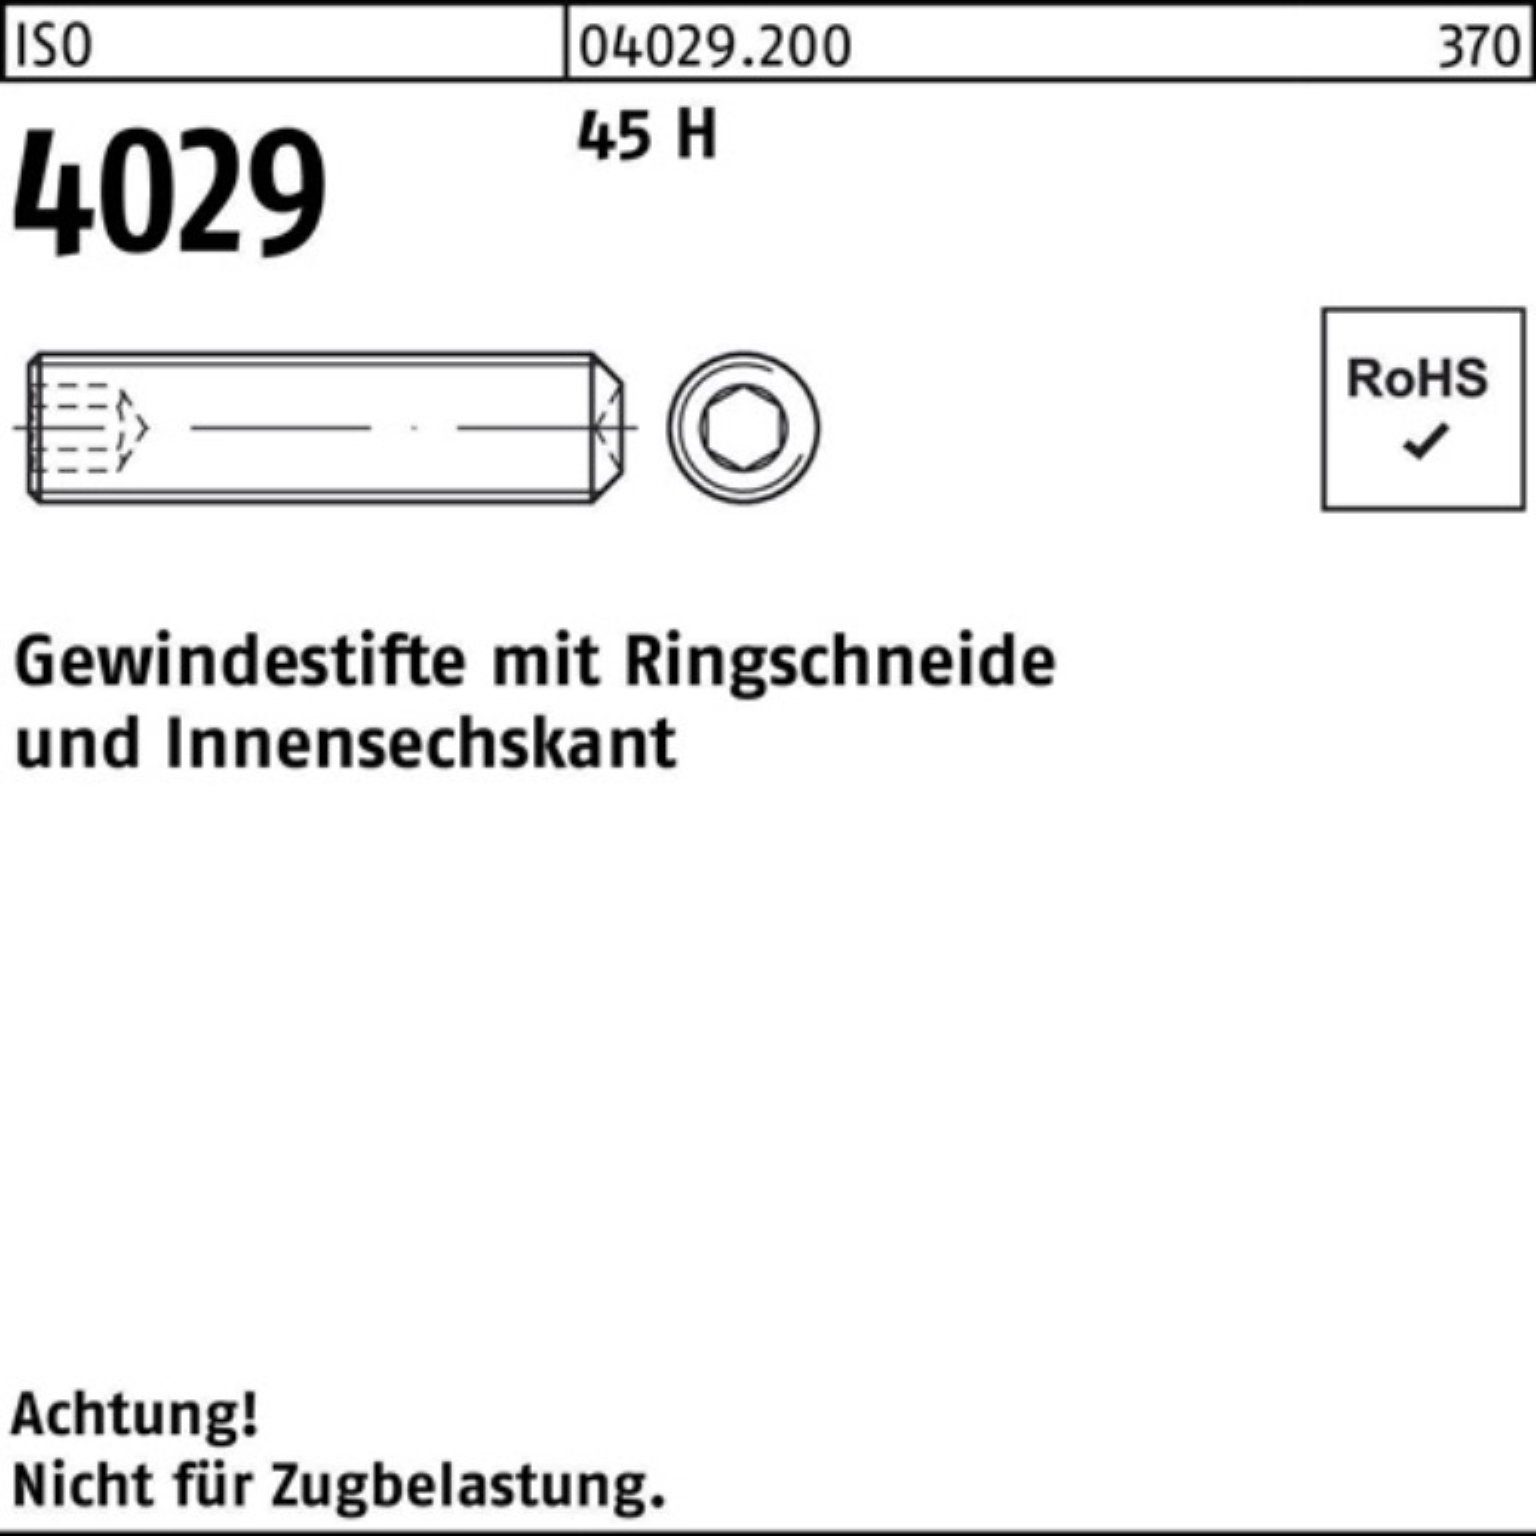 4029 Pack 1000er Gewindebolzen 45 H 1 16 M4x Ringschneide/Innen-6kt Gewindestift Reyher ISO